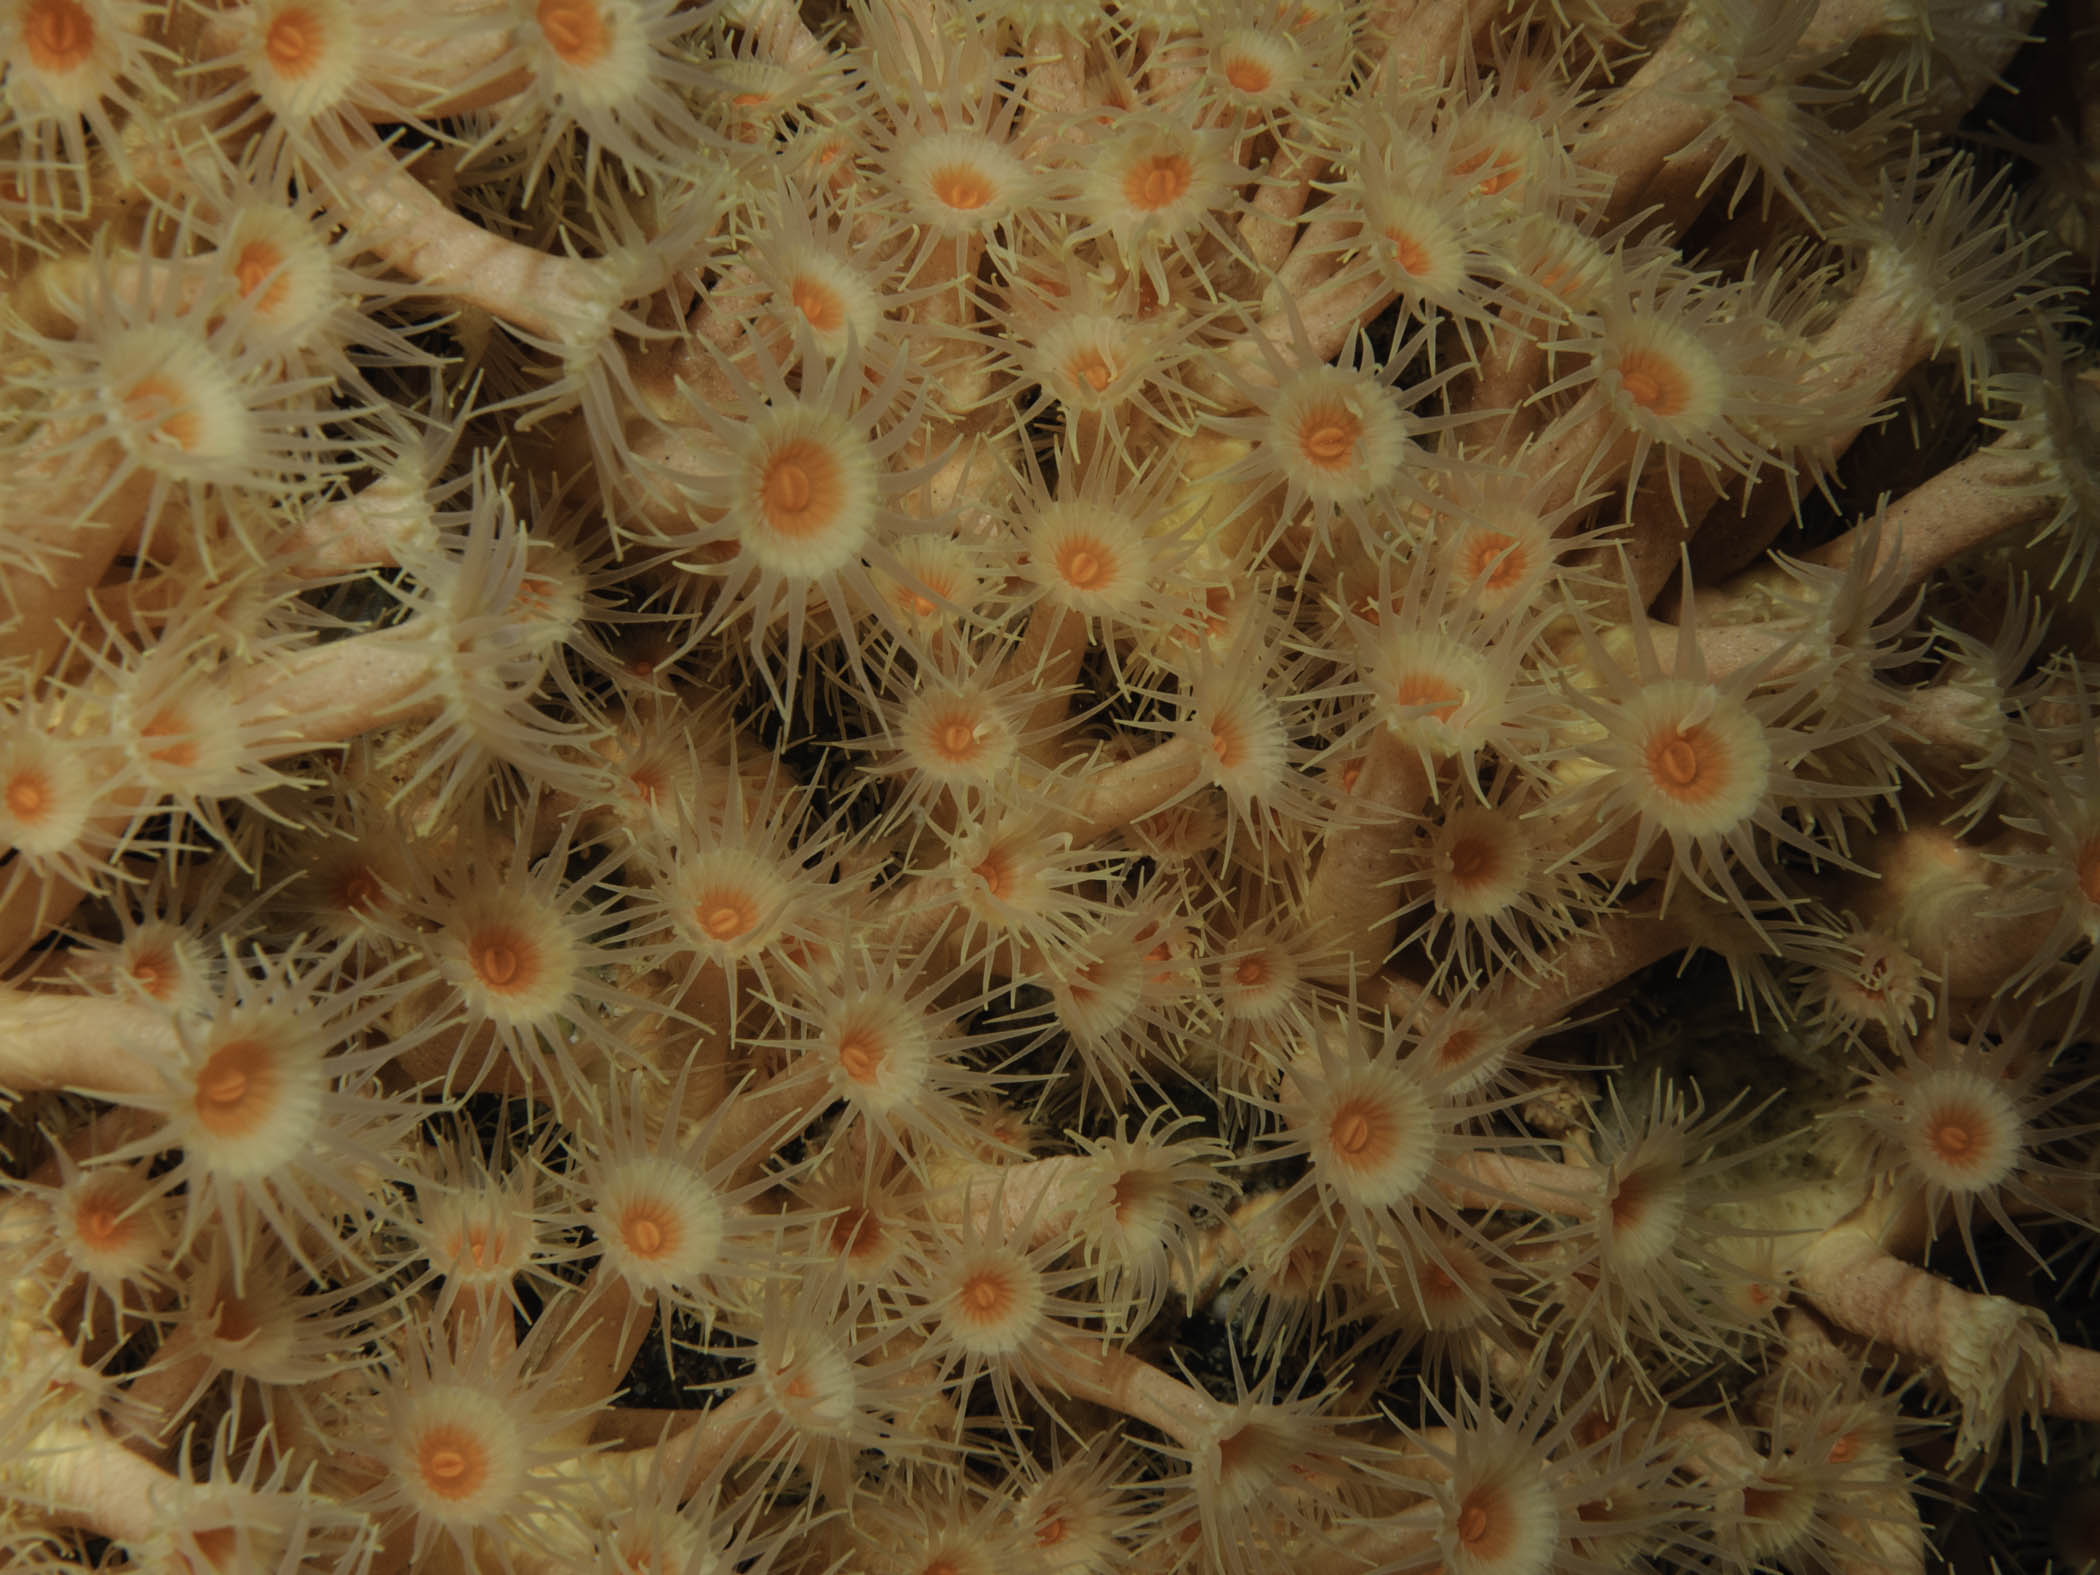 image: Parazoanthus axinellae. Rathlin Island, 2007.